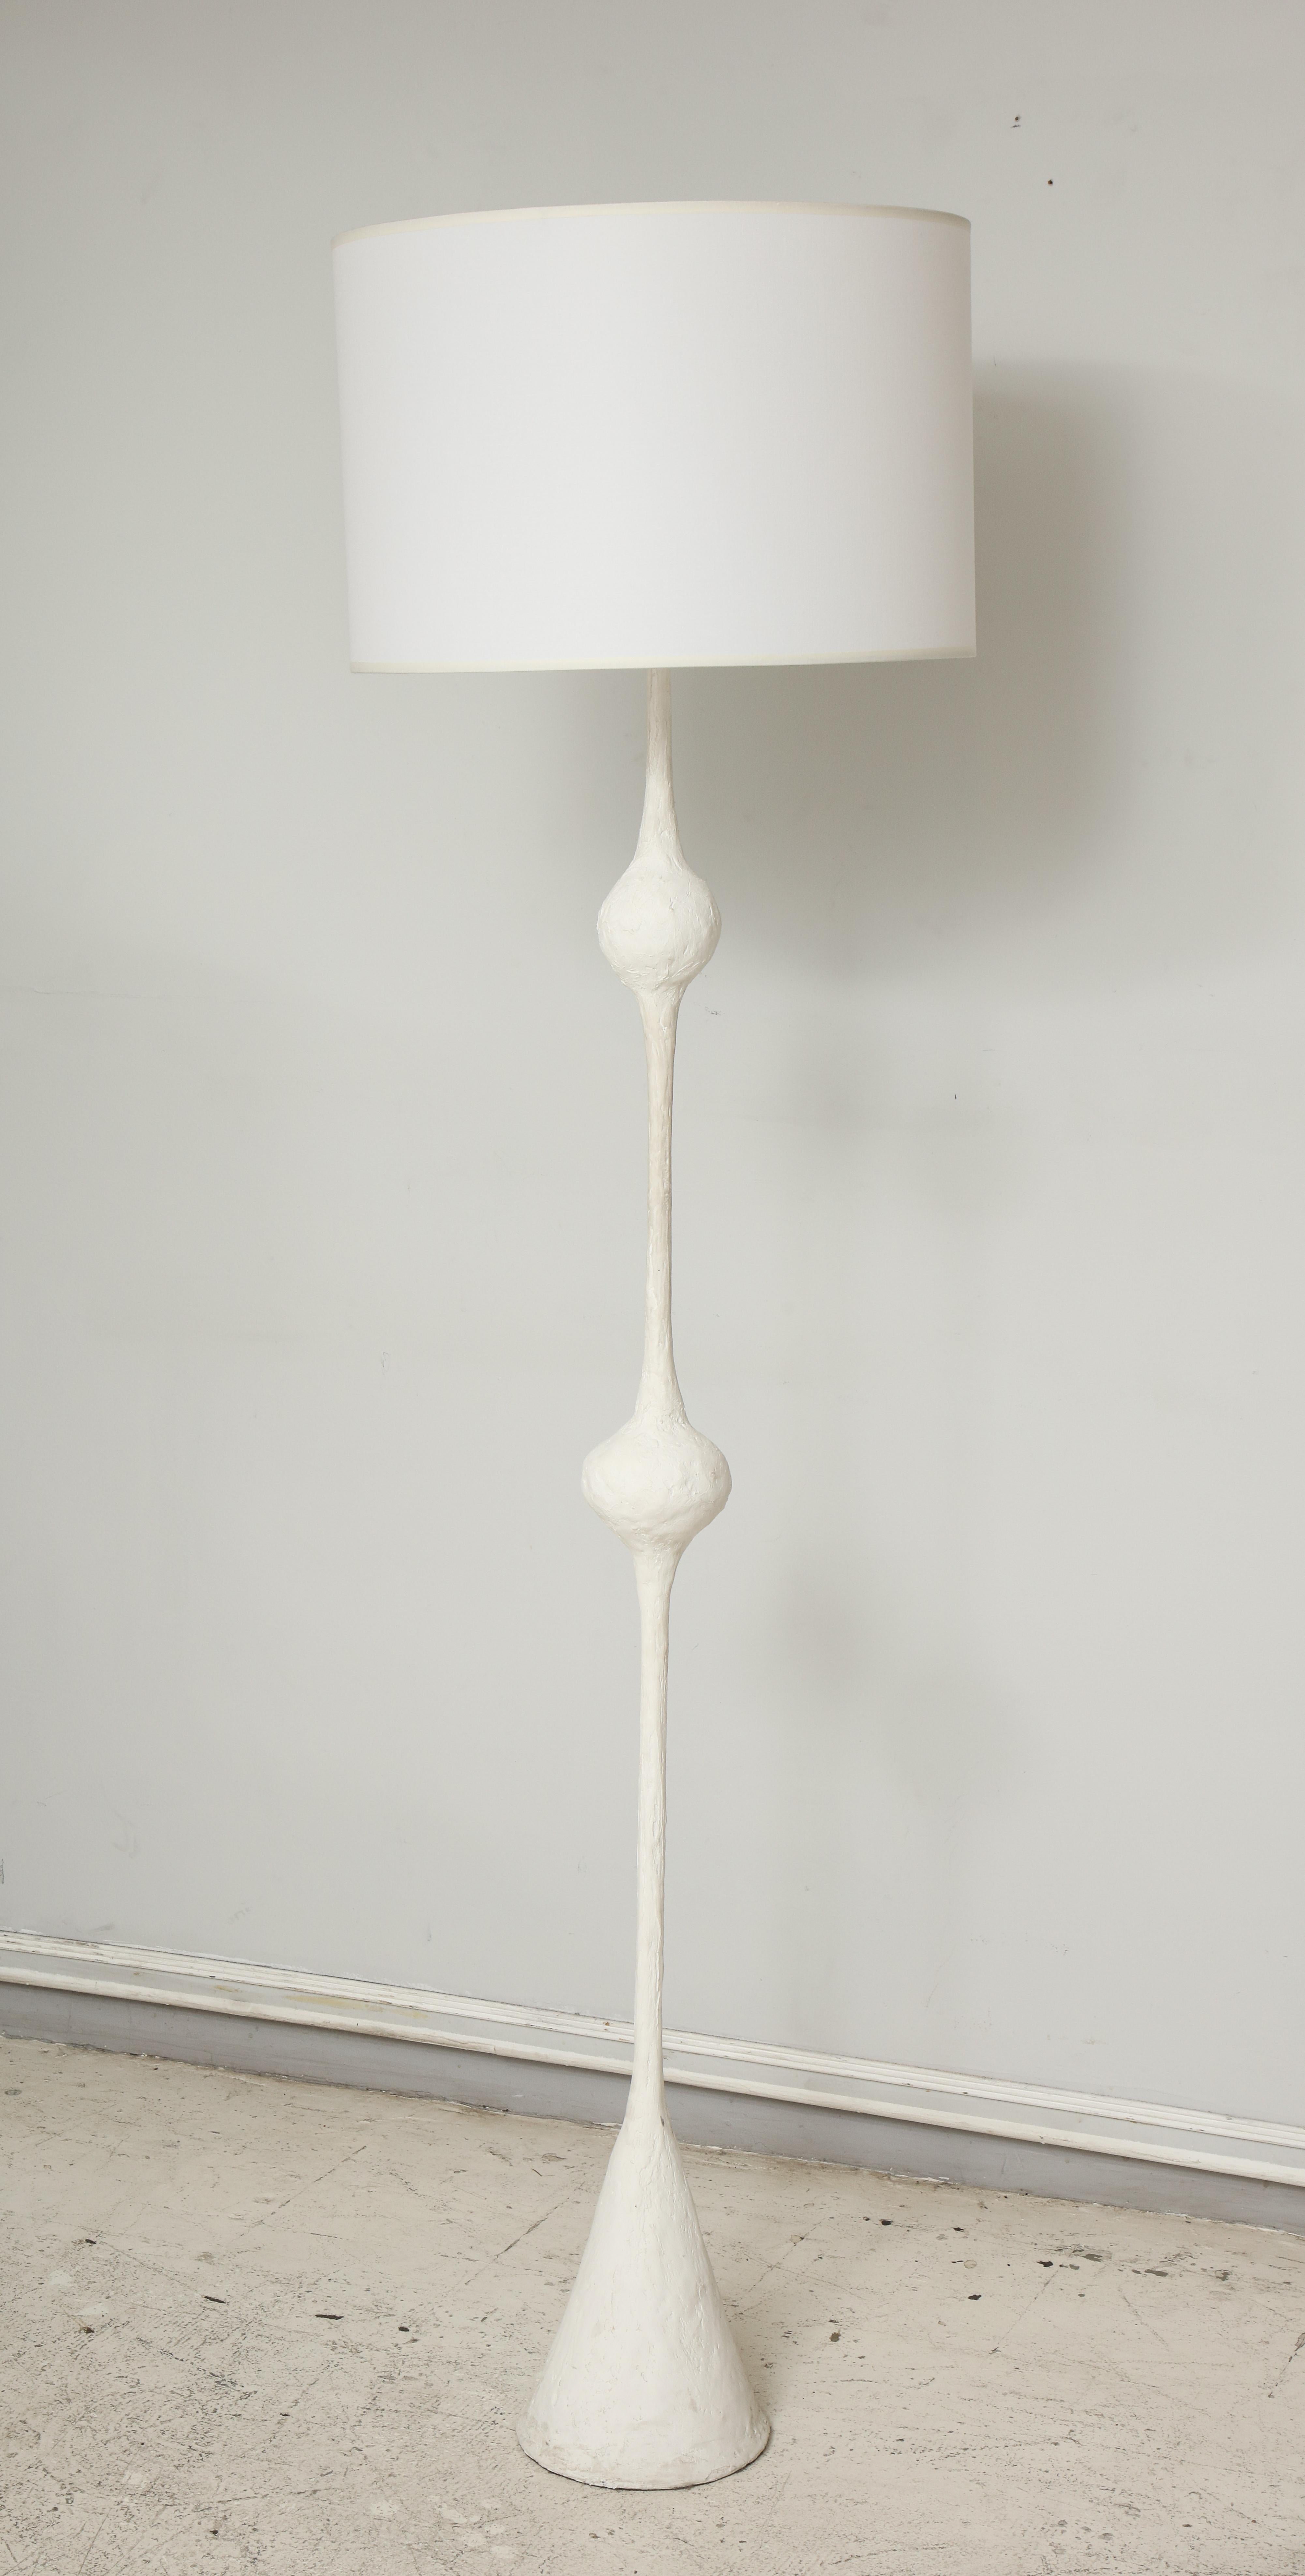 Lampadaire/ torchère en plâtre fabriqué à la main et sur mesure, à la manière de Giacometti. 
Veuillez noter que ce lampadaire est personnalisable. Le délai d'exécution est de 8 à 10 semaines.